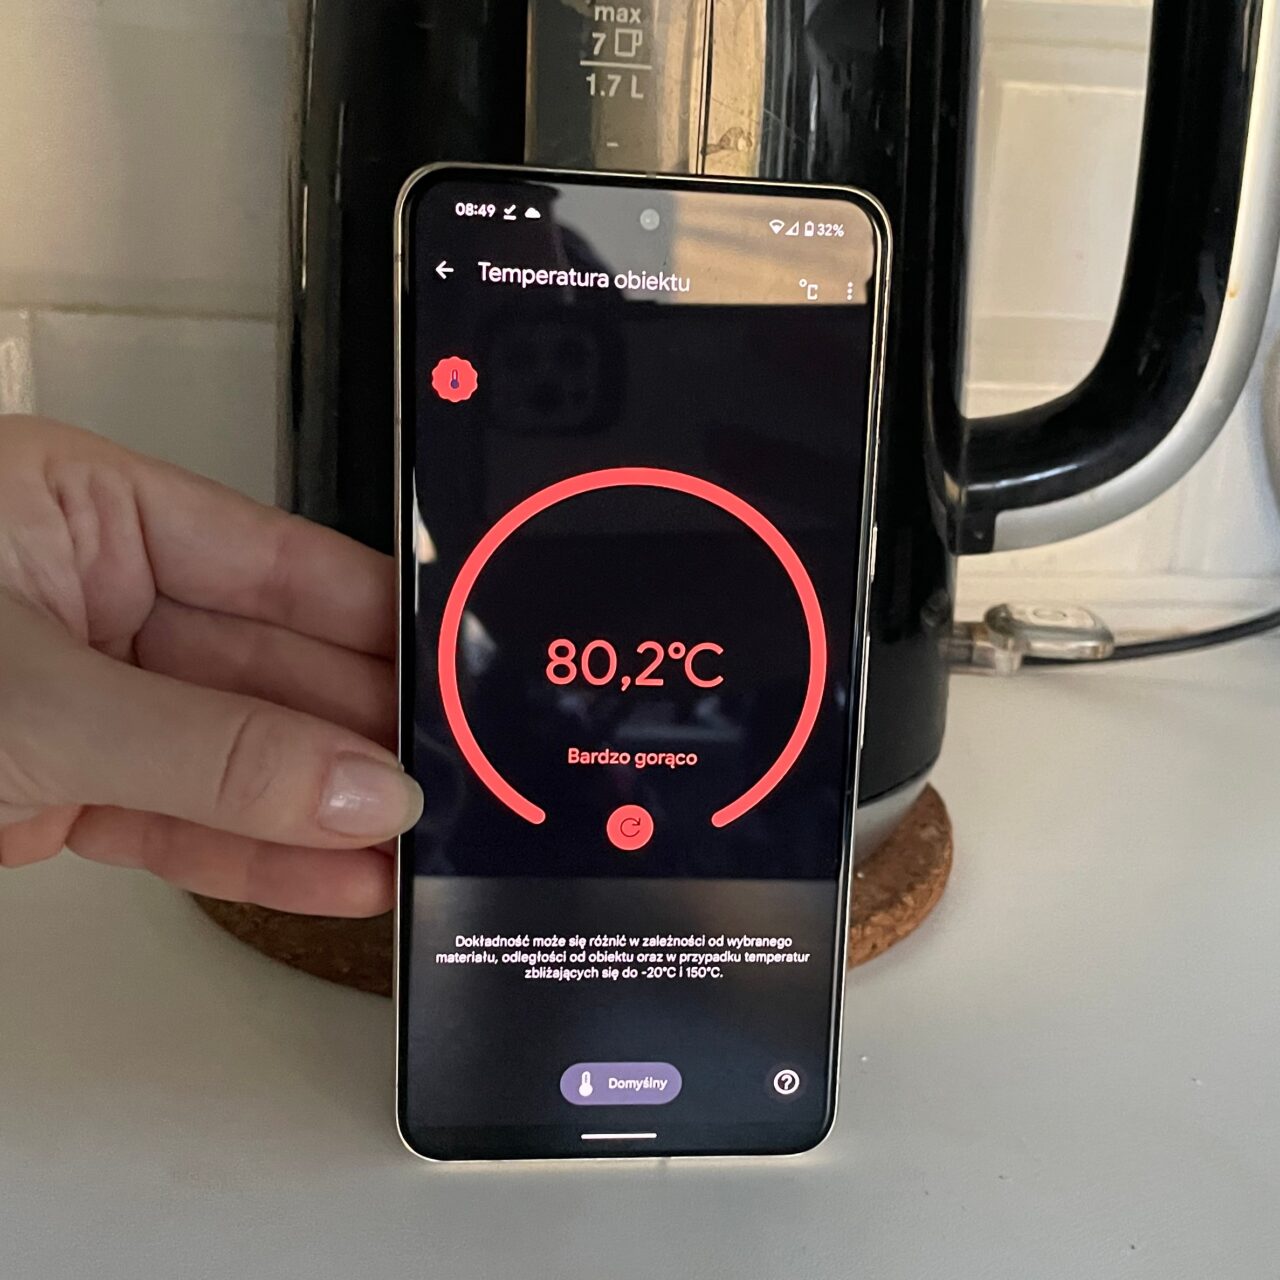 Ręka trzymająca smartfon, na ekranie aplikacja mierząca temperaturę pokazuje 80,2°C z opisem "Bardzo gorąco".